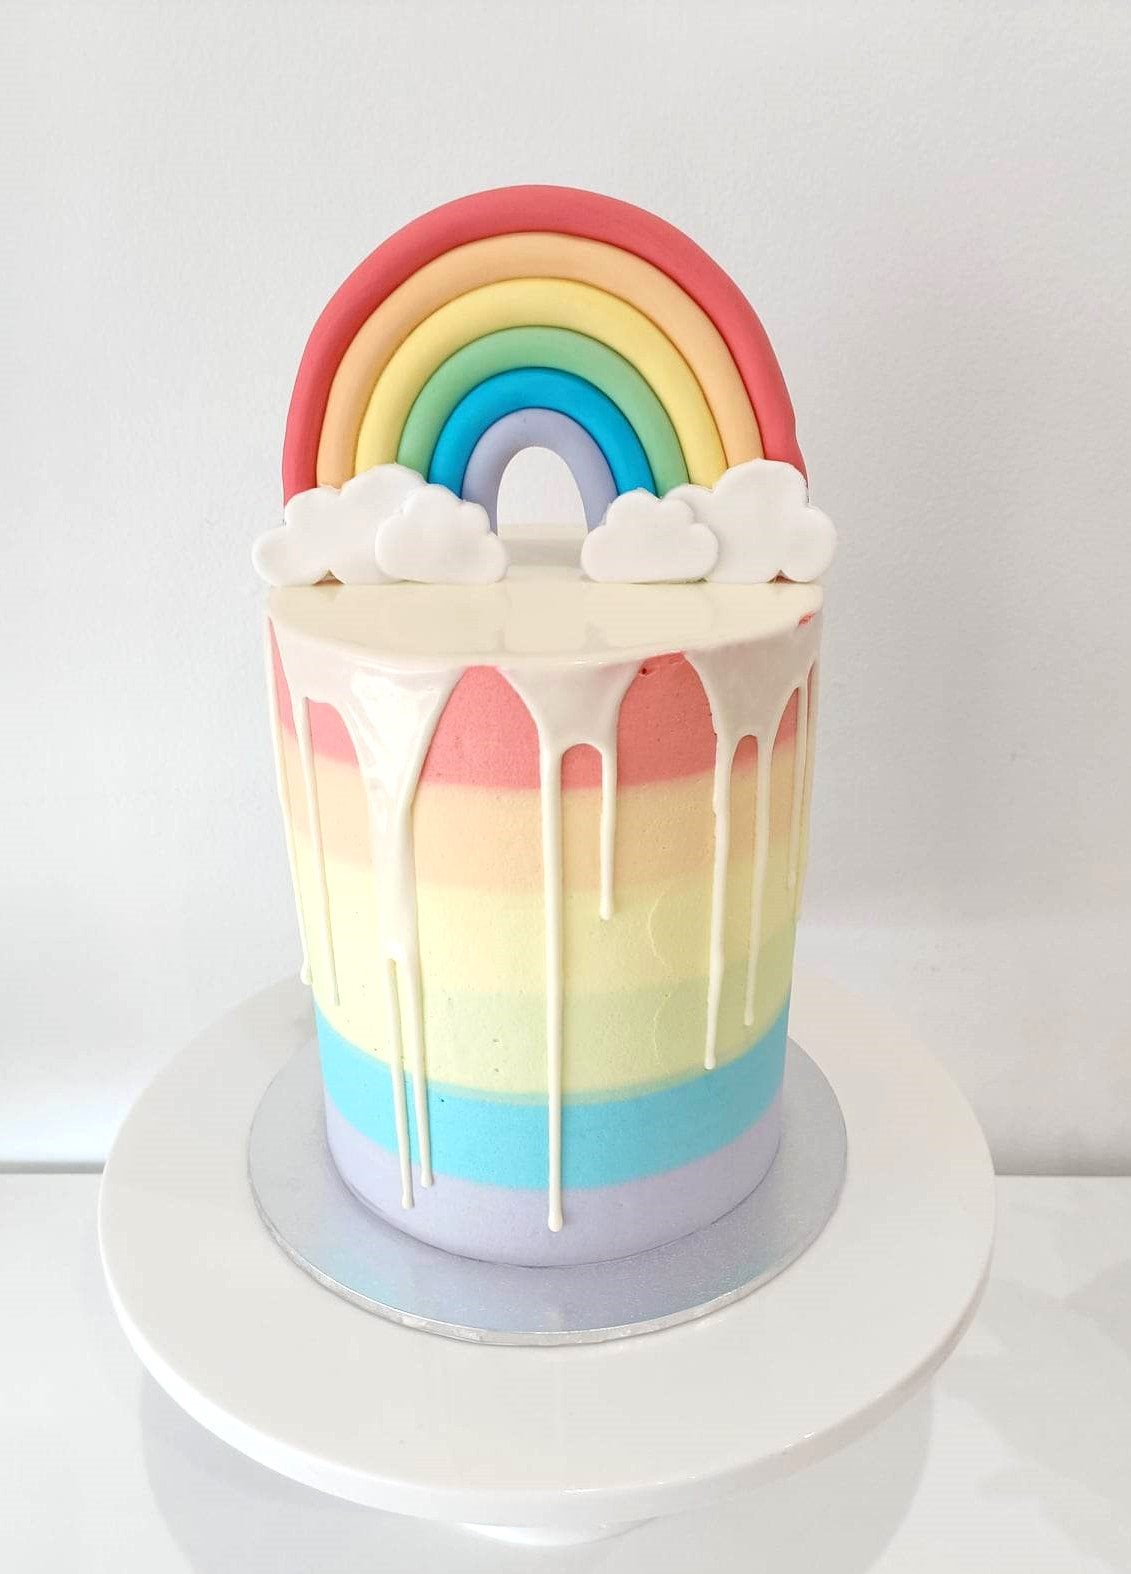 15 Ravishing Rainbow Cakes - Find Your Cake Inspiration